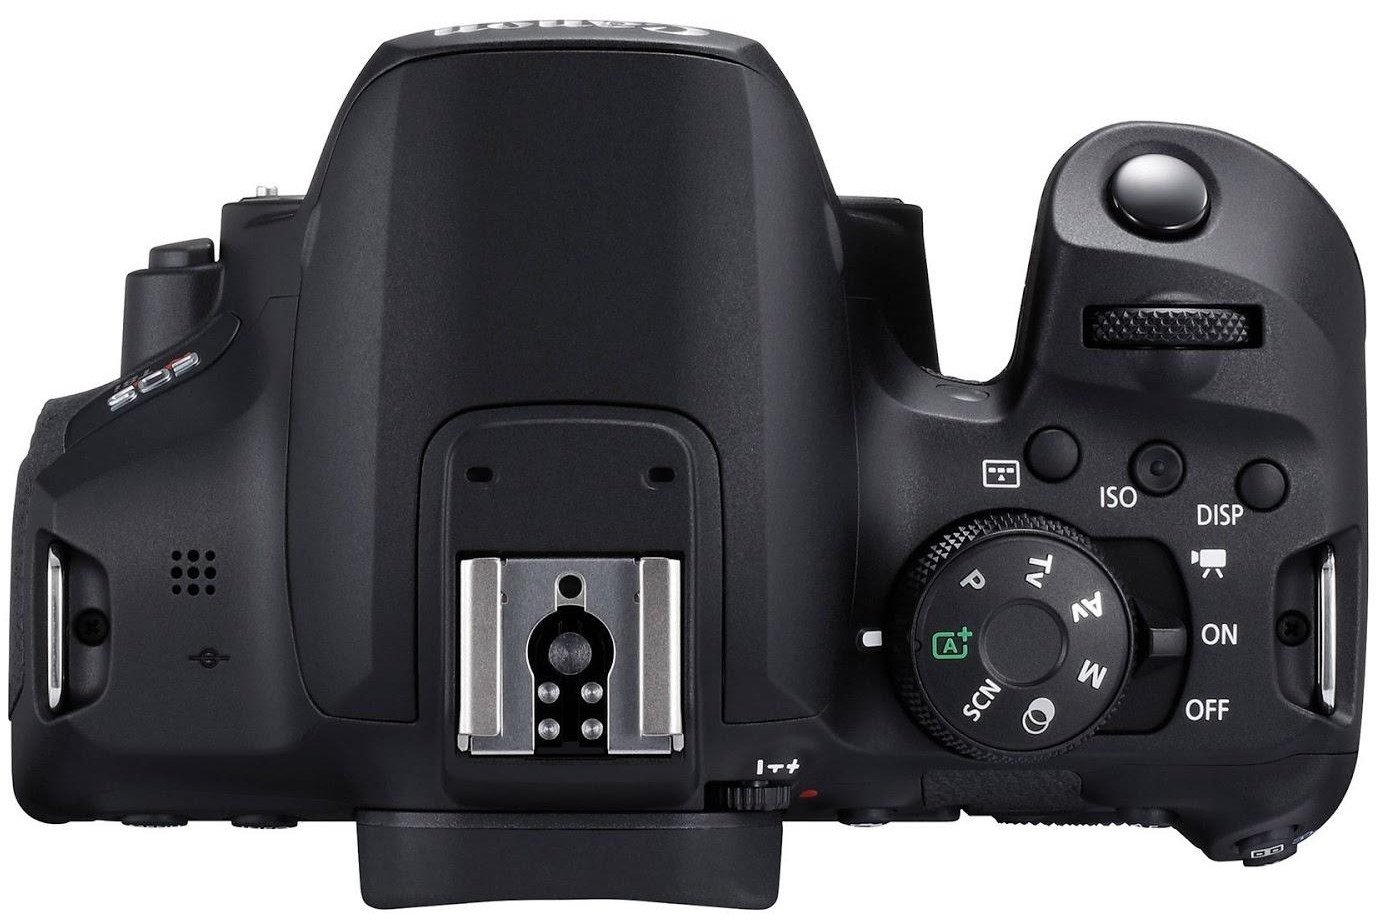 Canon EOS 850D kit 18-55 stm 